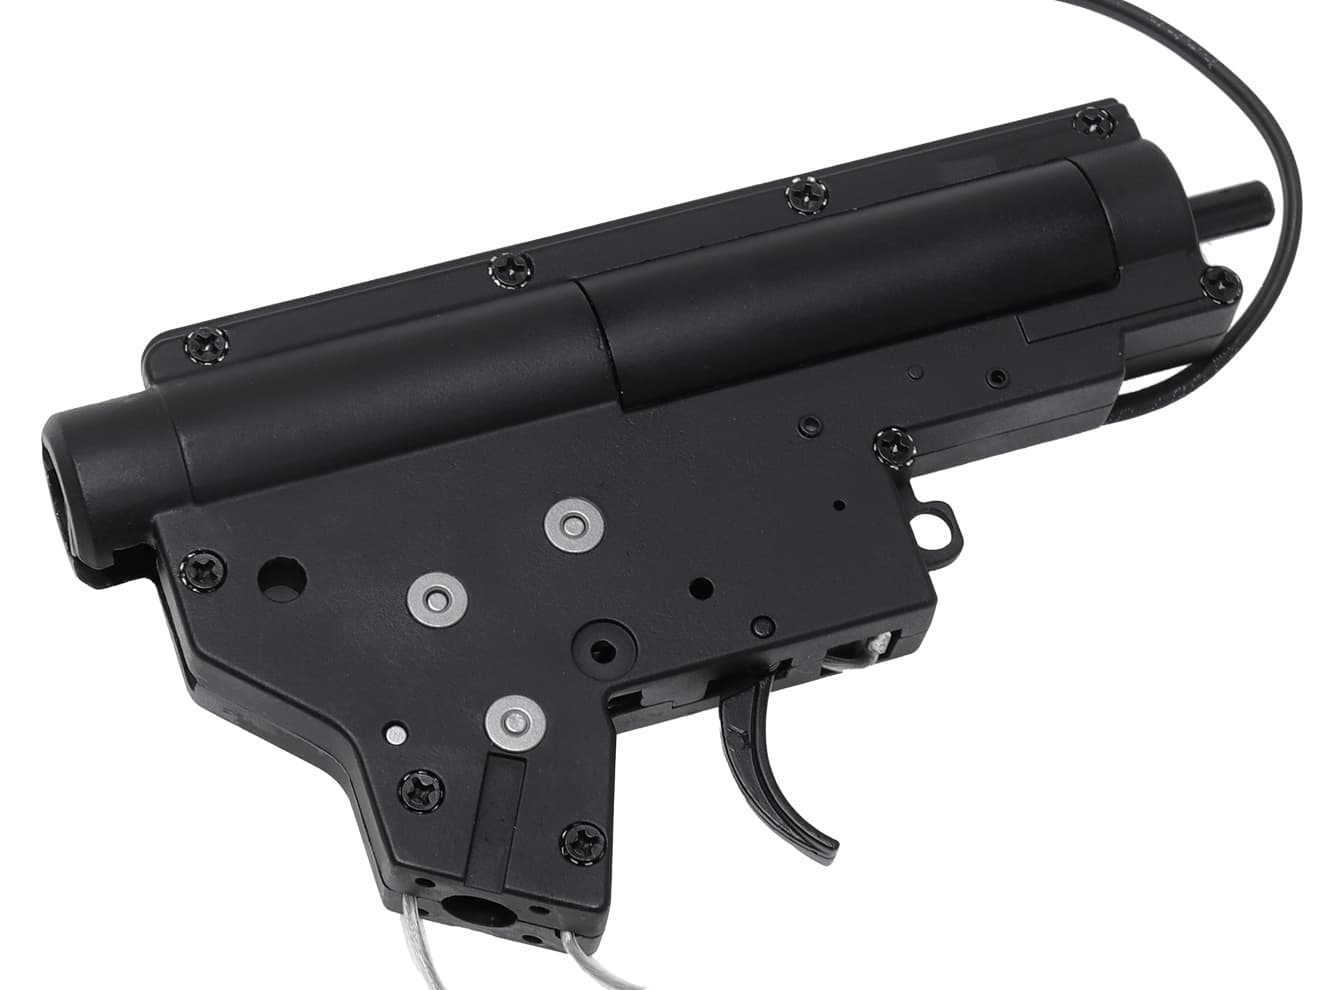 ZC-AMBX-012FT　ZC LEOPARD V2 QD スタンダード メカボックスCOMP 8mm 前方配線/標準スイッチ for AEG M4